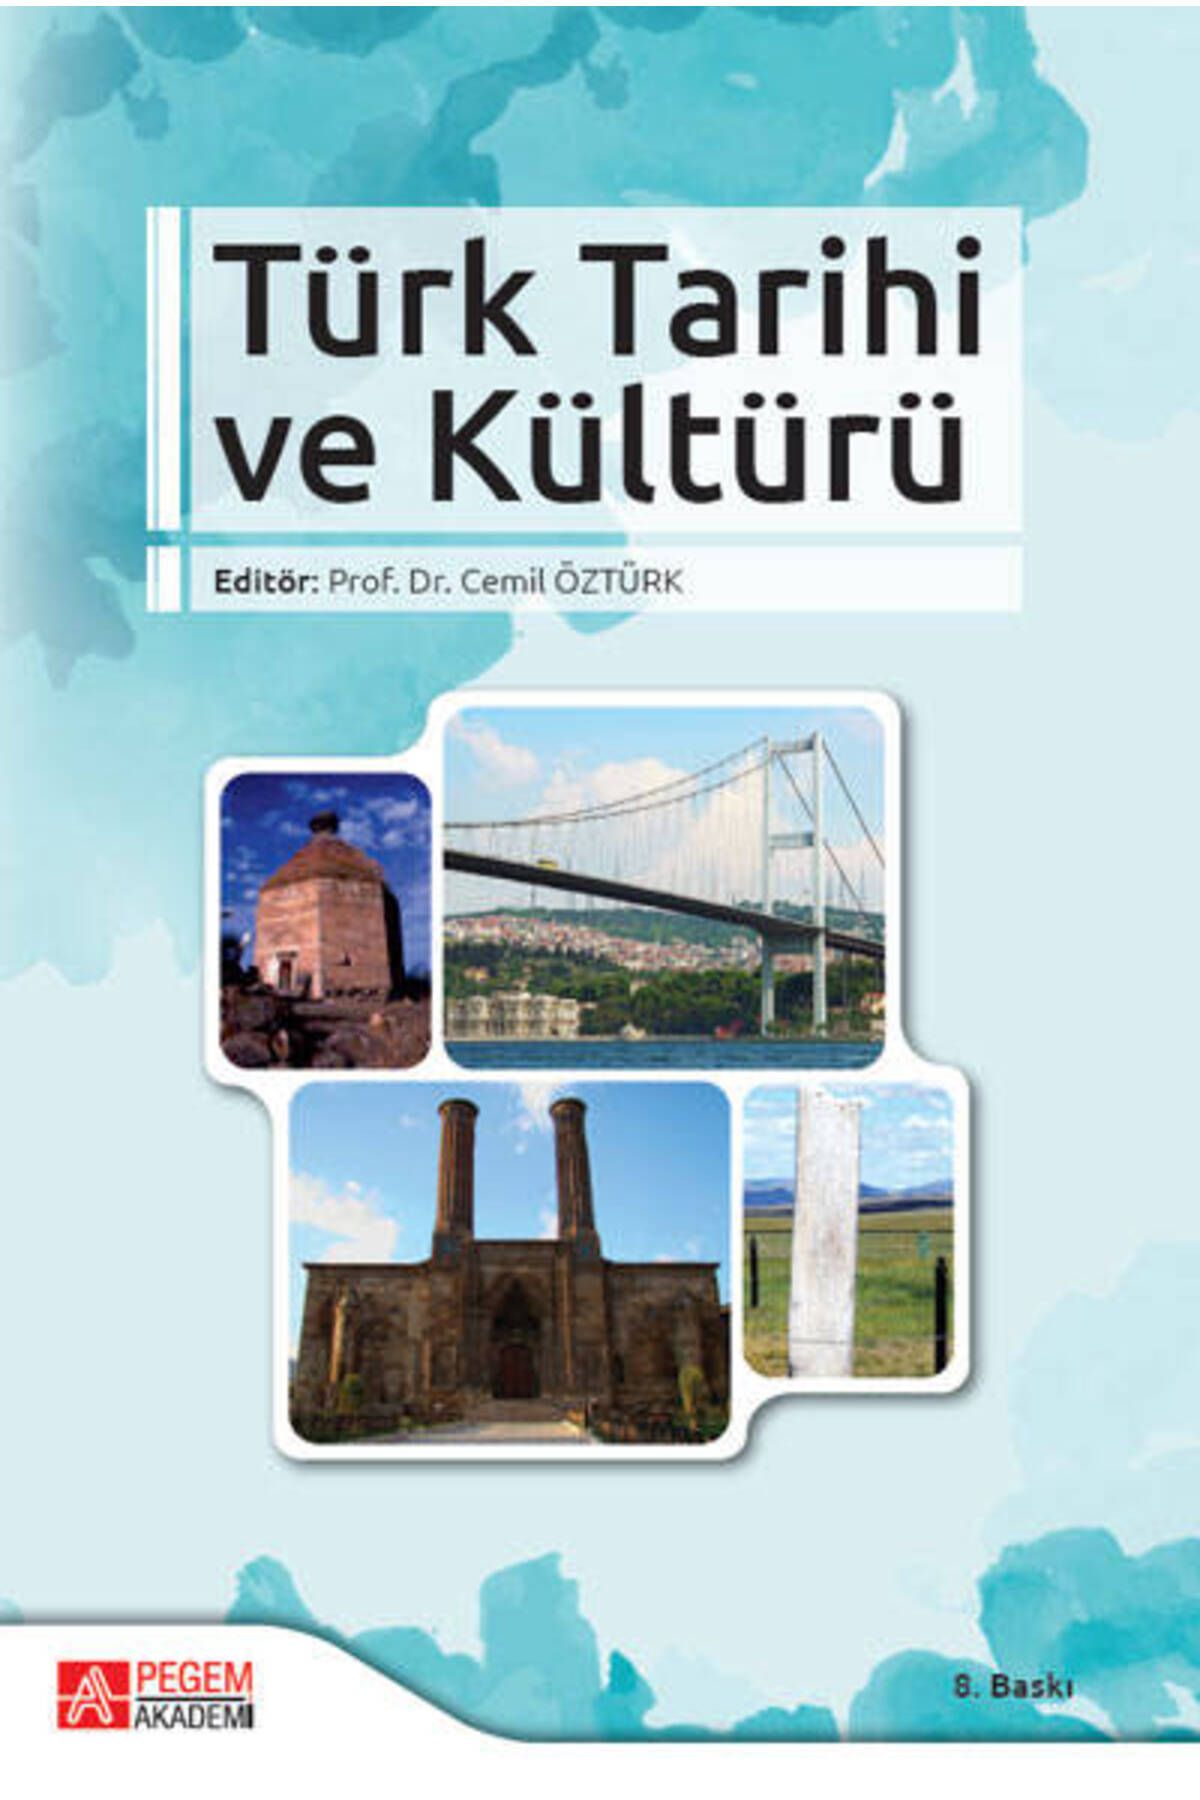 Pegem Akademi Yayıncılık Pegem Akademik Türk Tarihi Ve Kültürü